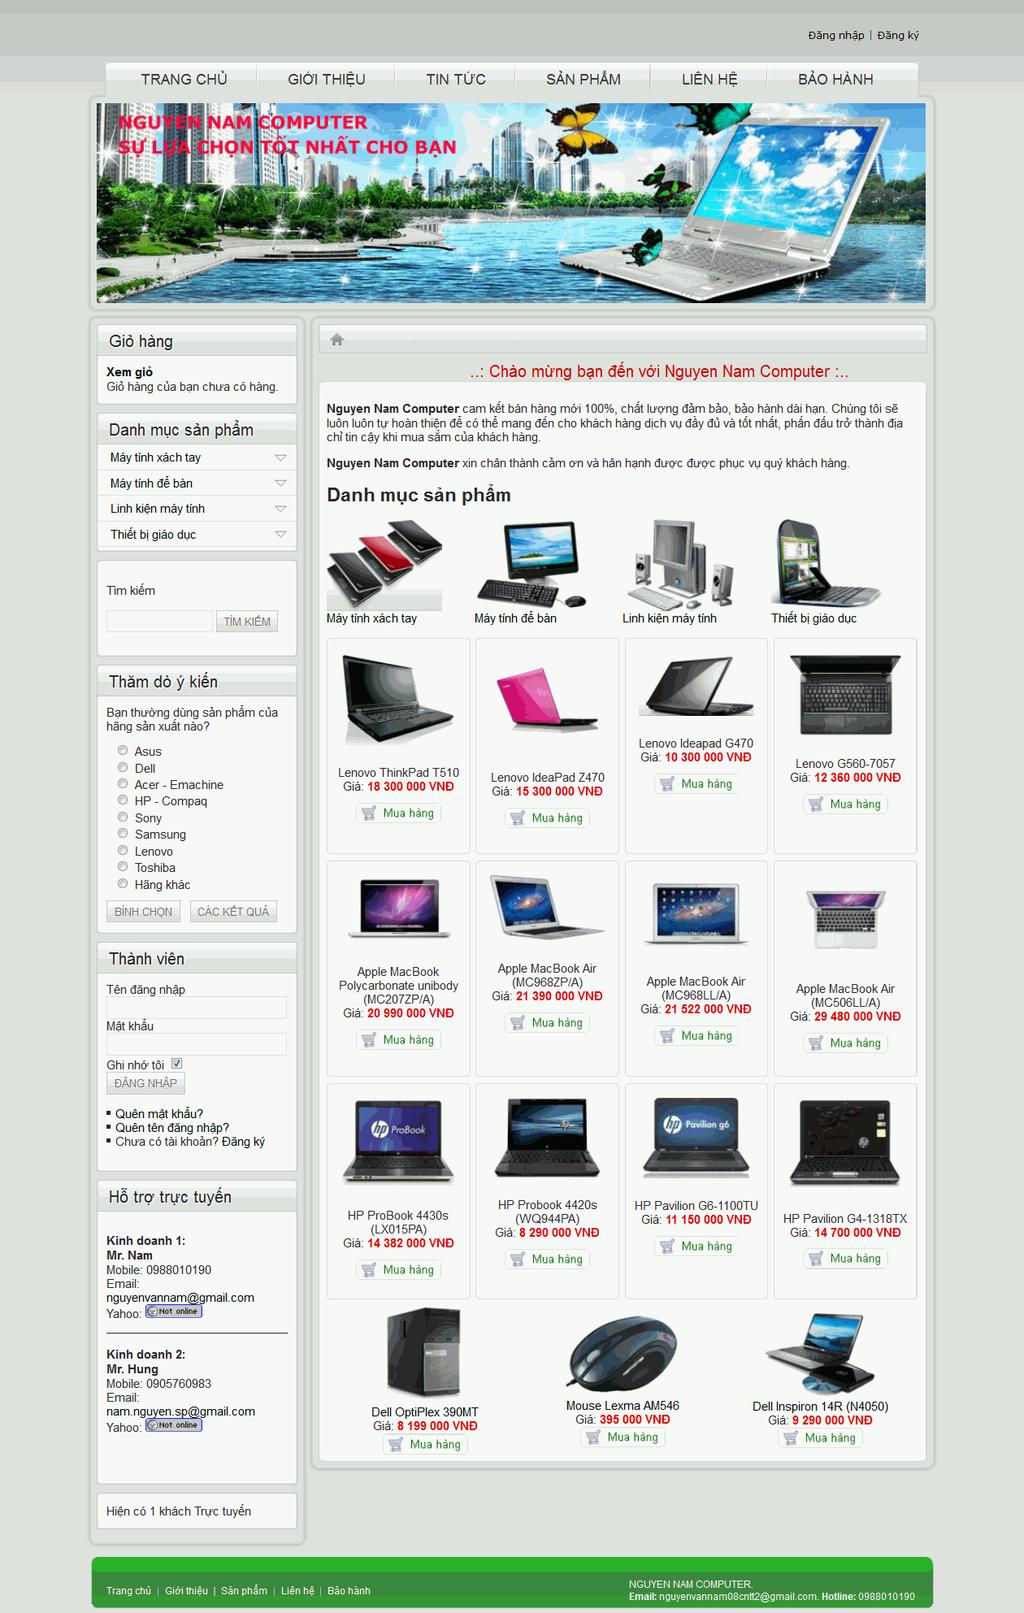 3.4. Giao diện website bán máy tính qua mạng 3.4.1. Trang chủ Hình 3.